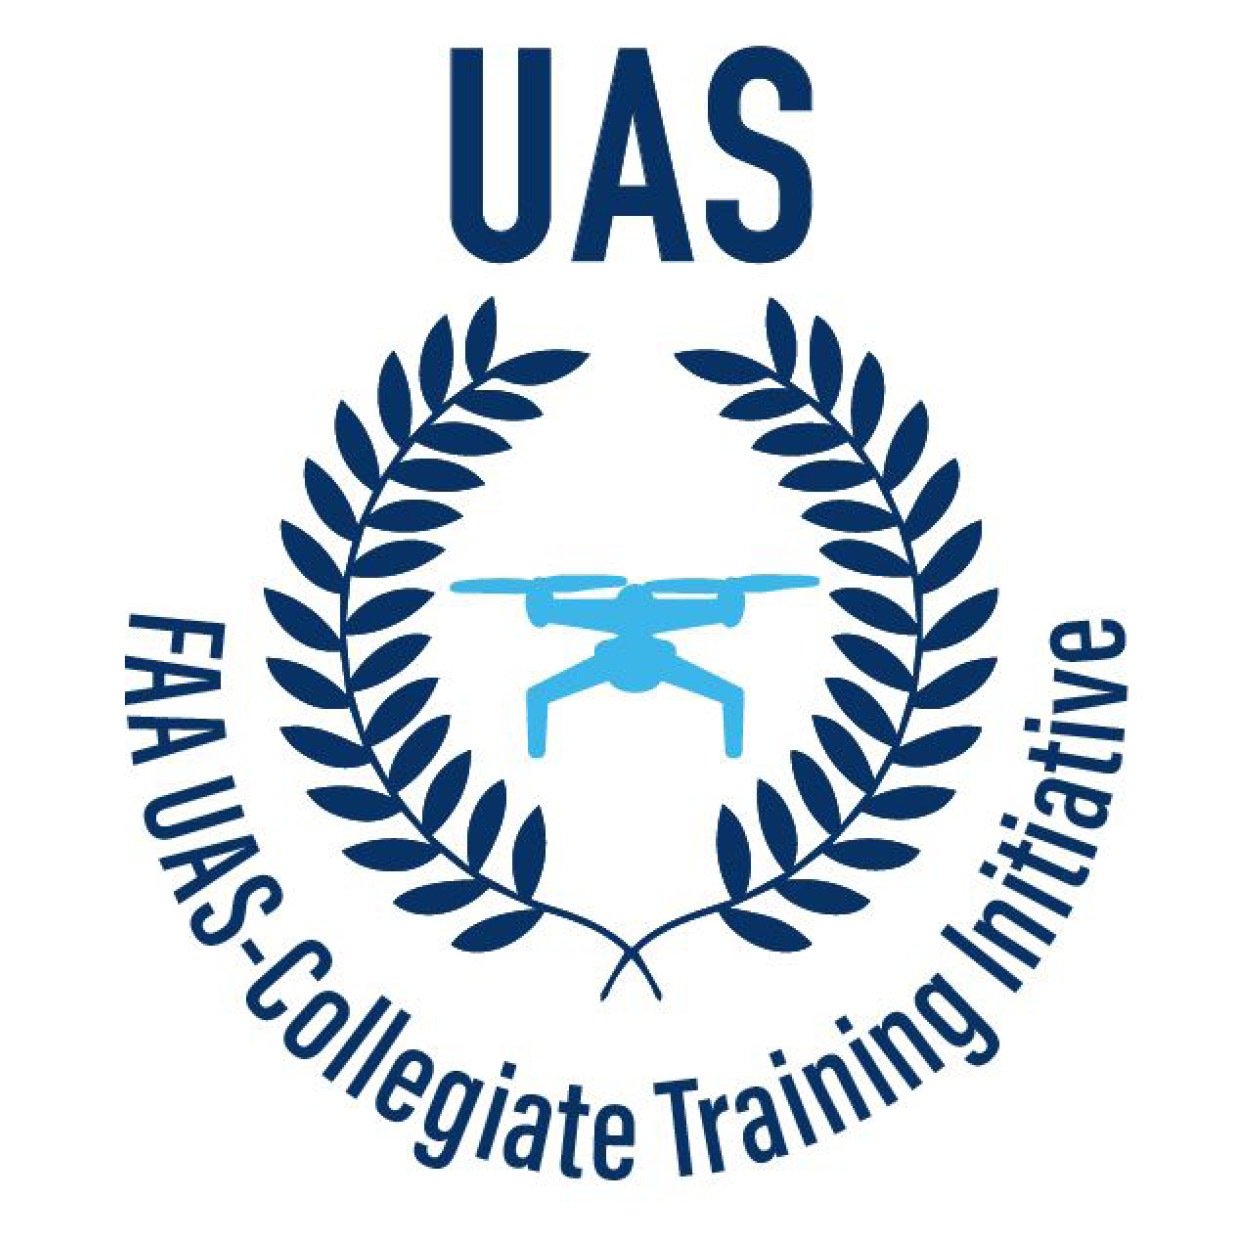 A photo of the UAS training logo.